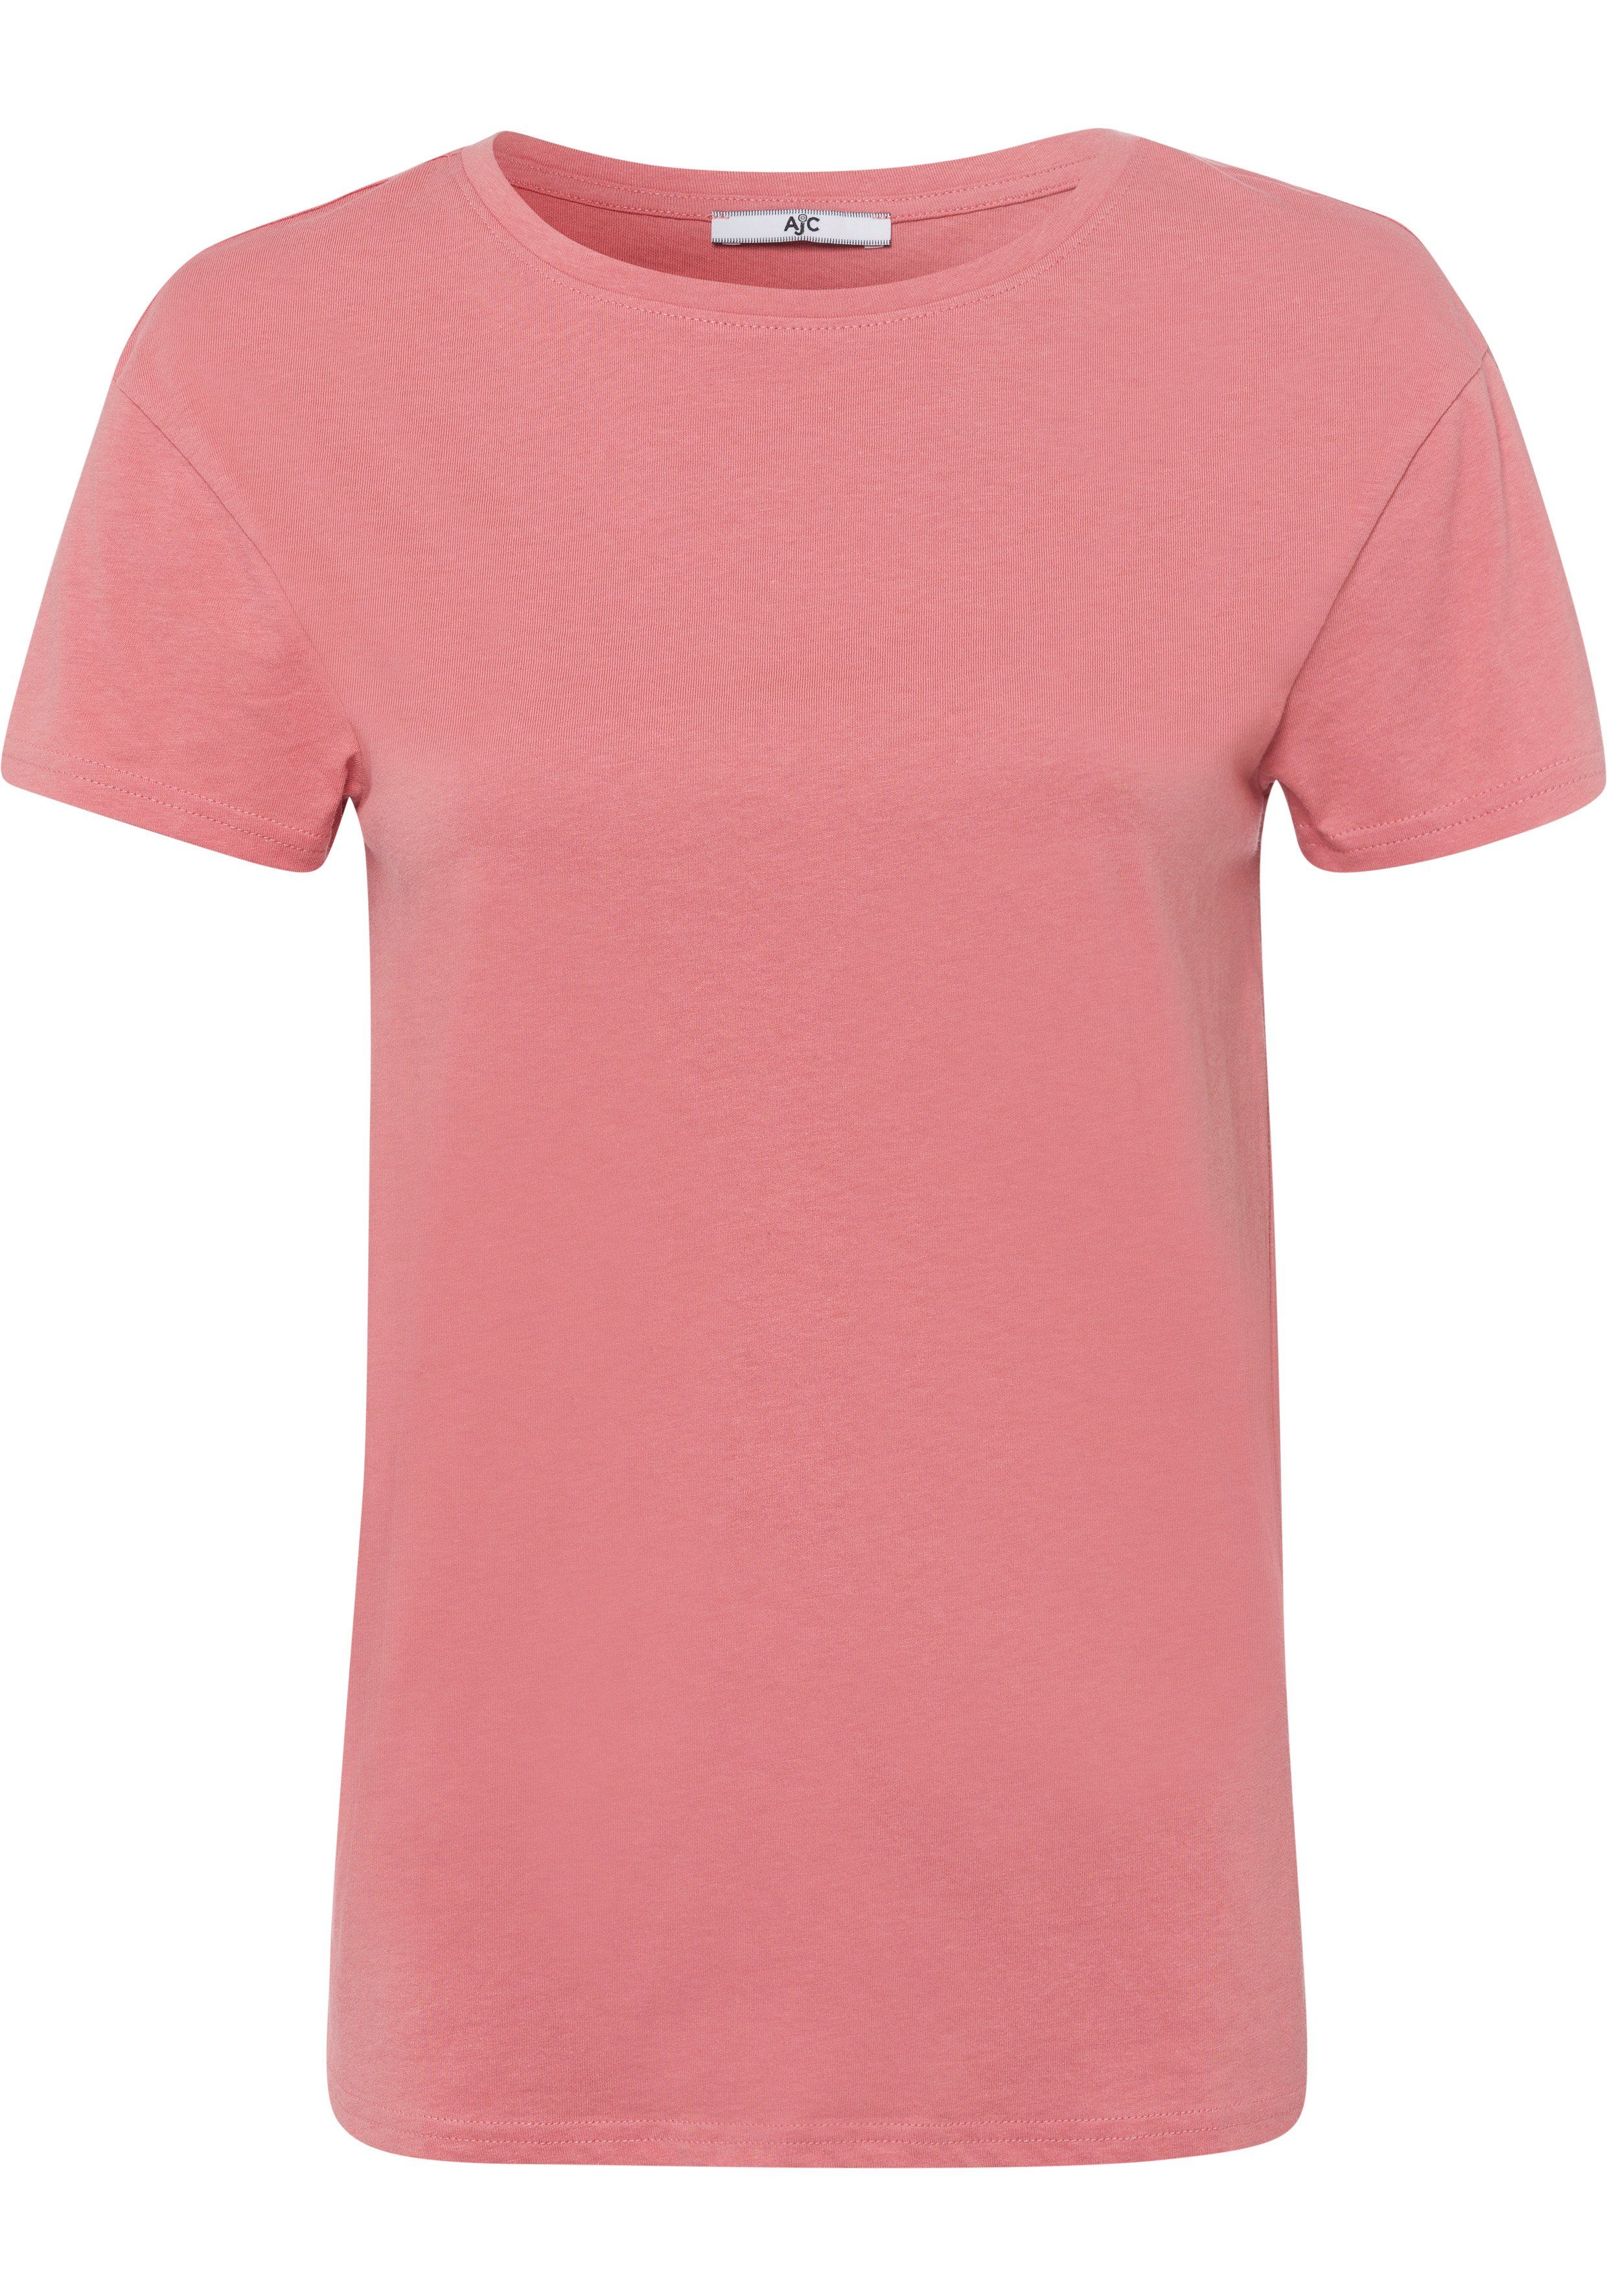 AJC lachs KOLLEKTION trendigen T-Shirt im Oversized-Look NEUE -